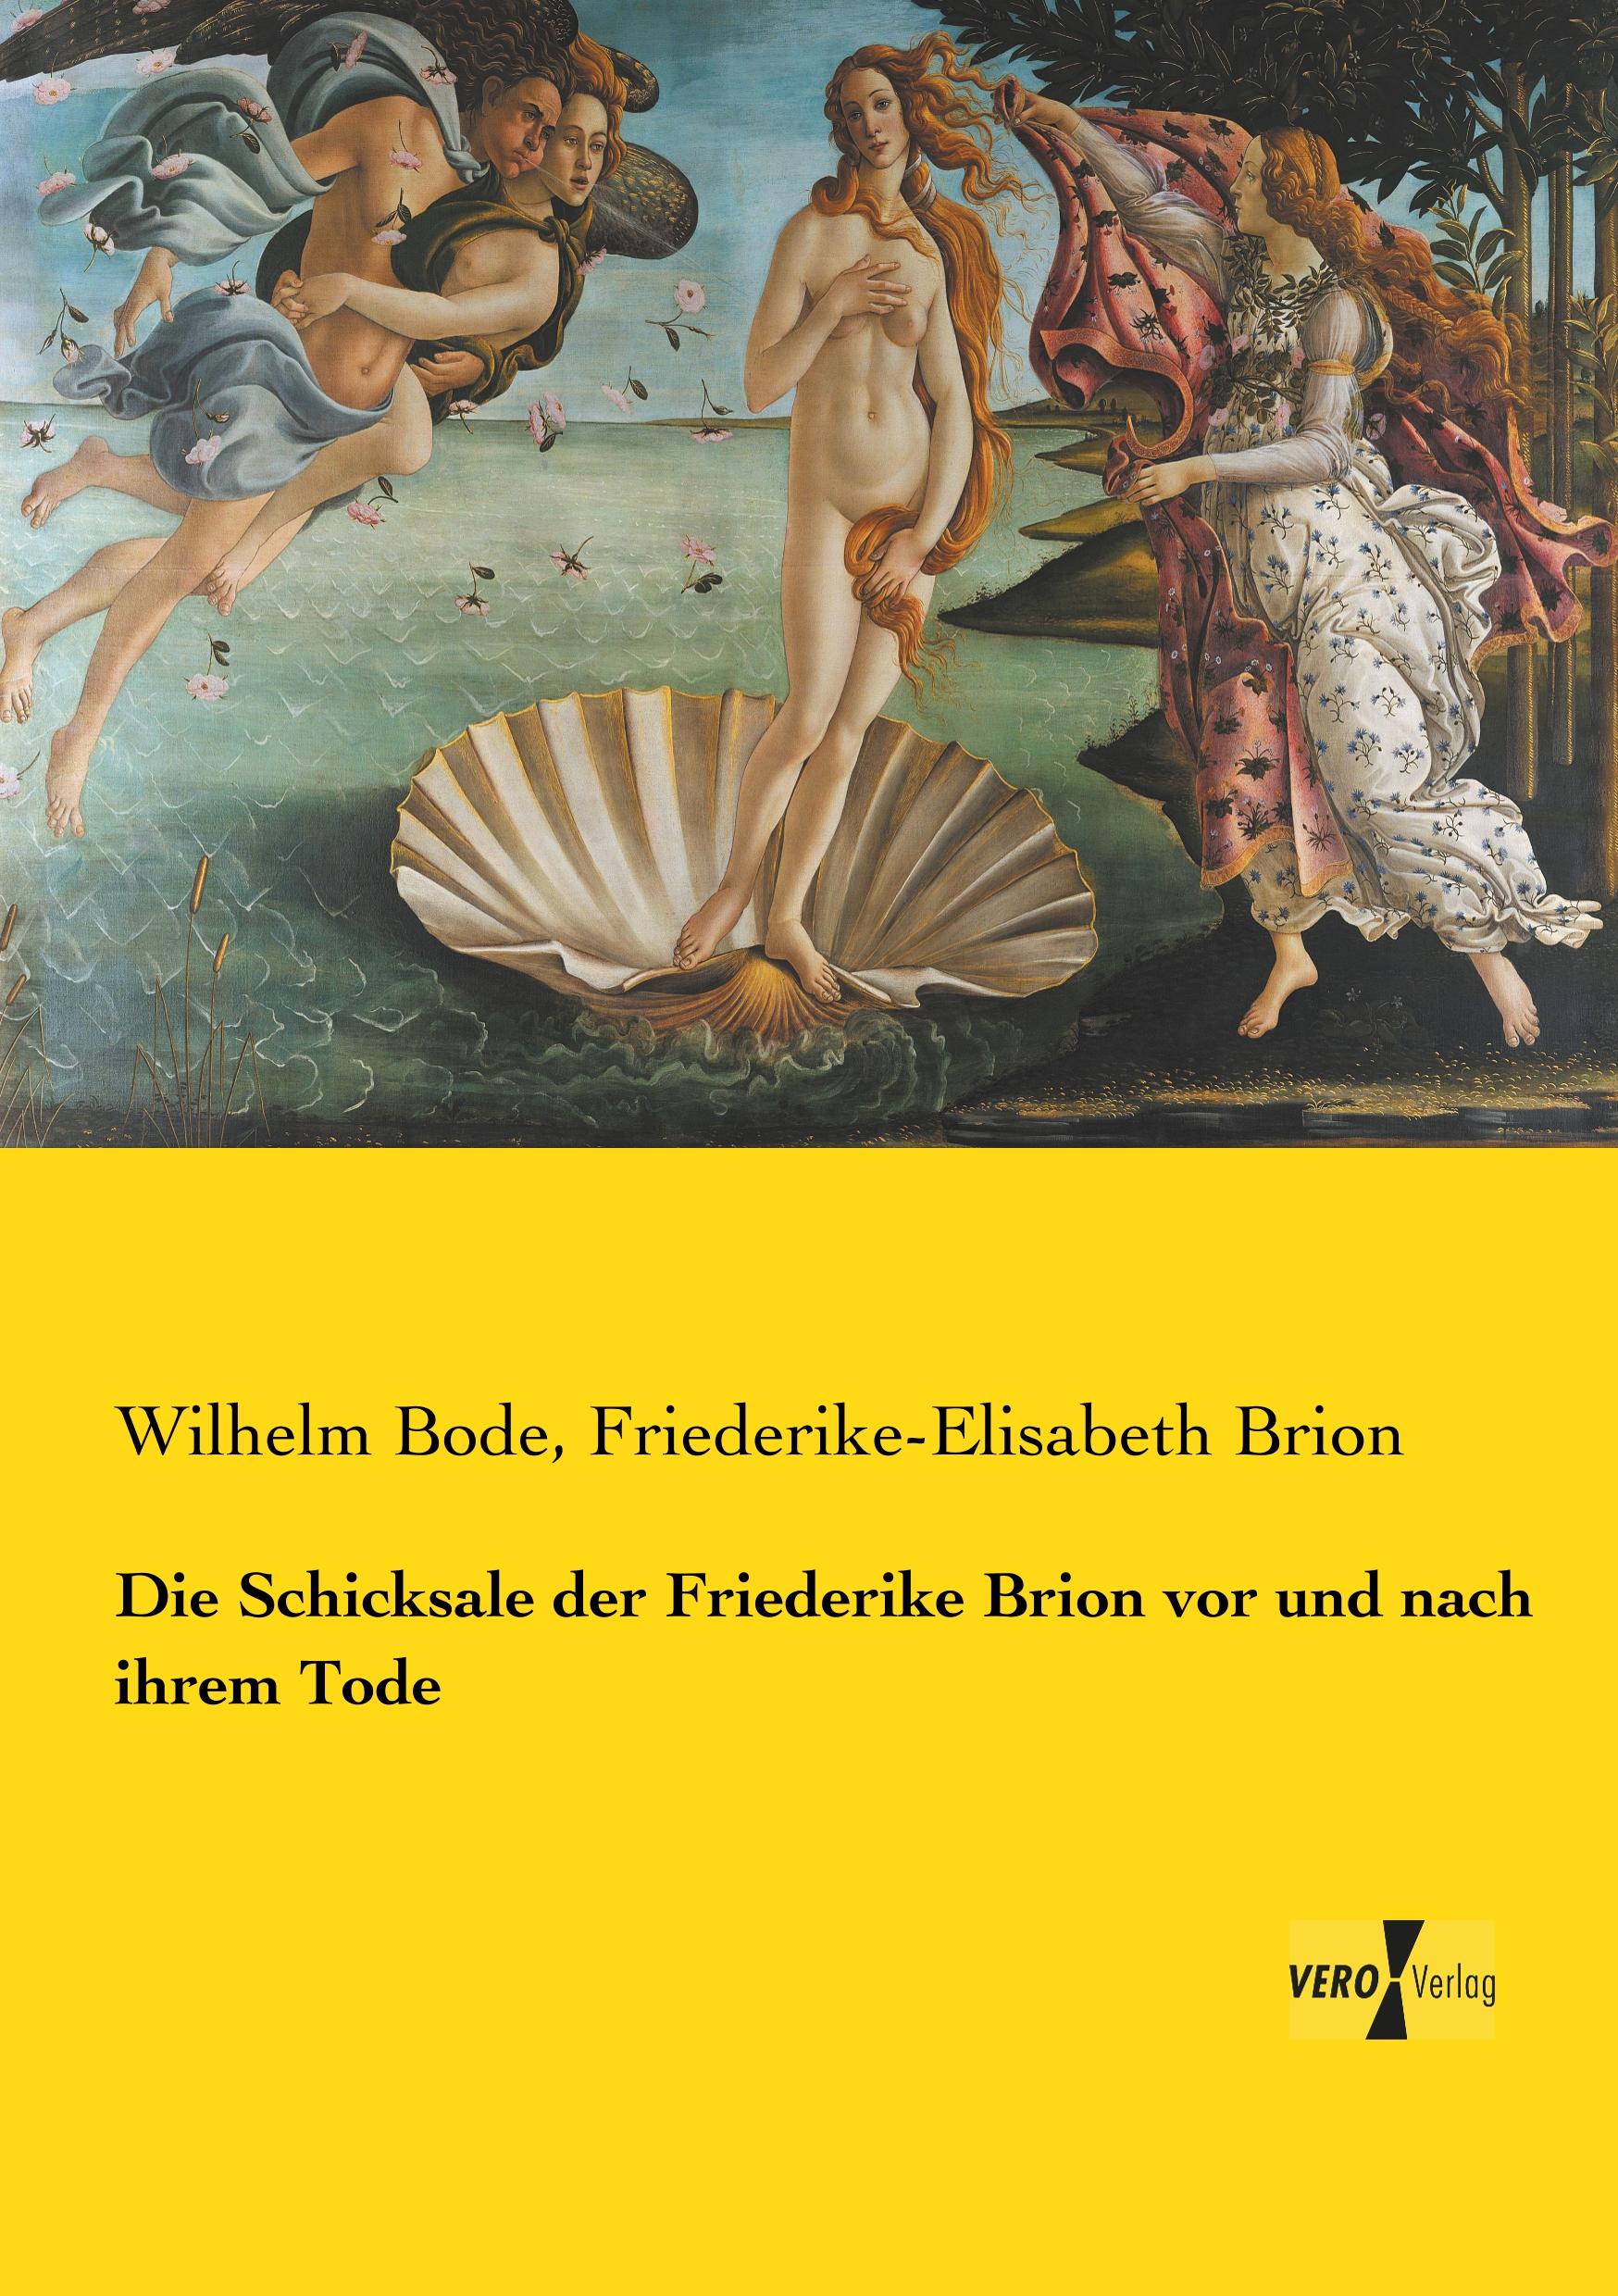 Die Schicksale der Friederike Brion vor und nach ihrem Tode / Wilhelm Bode (u. a.) / Taschenbuch / Paperback / 220 S. / Deutsch / 2019 / Vero Verlag / EAN 9783737220538 - Bode, Wilhelm